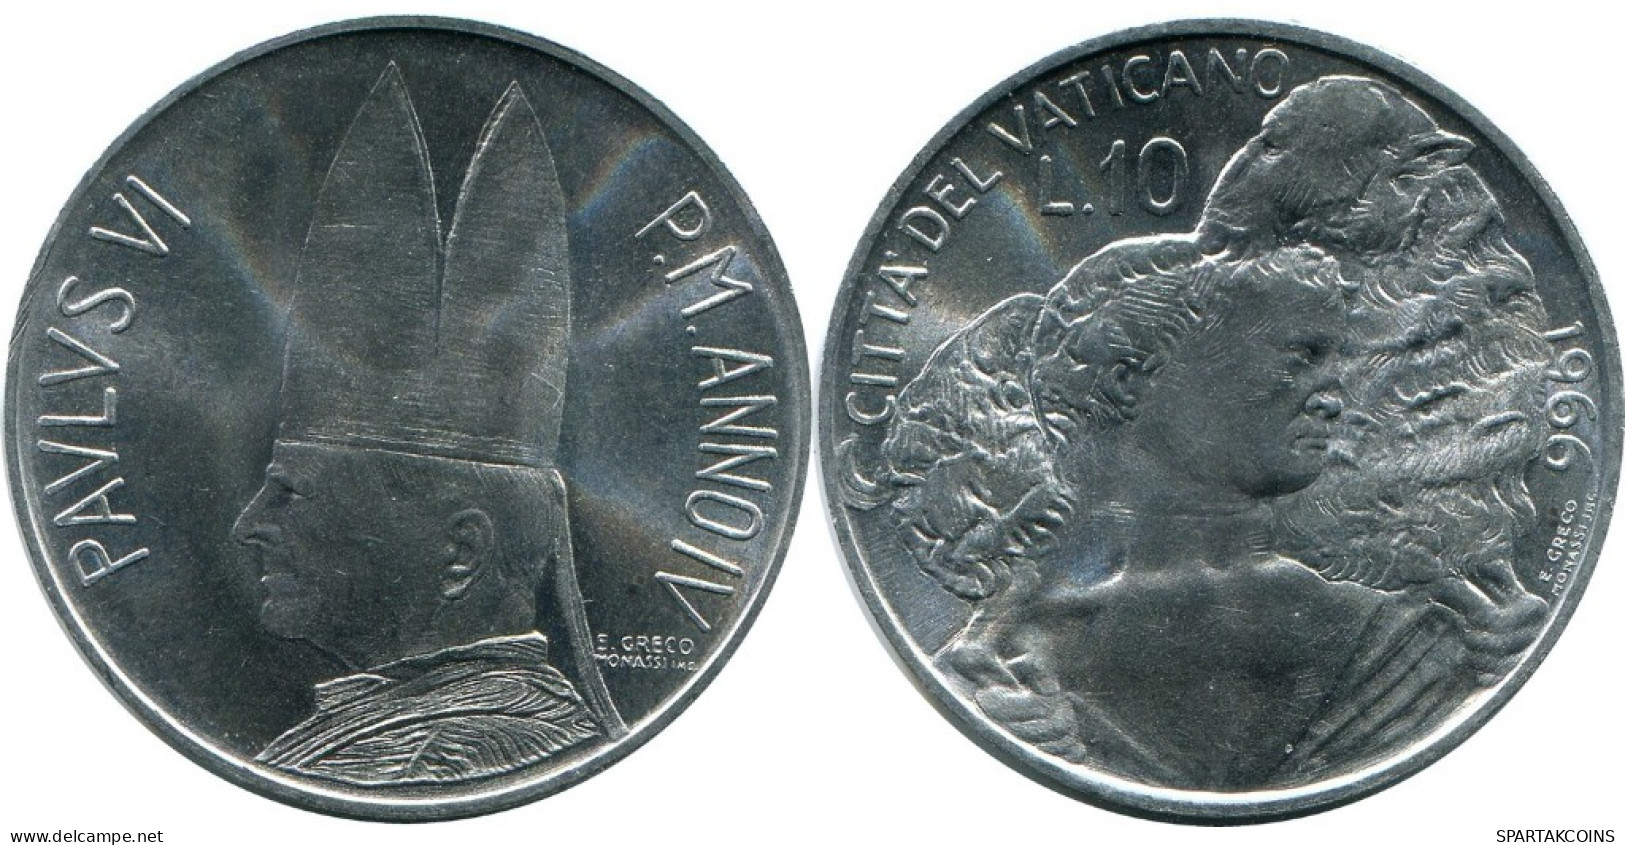 10 LIRE 1966 VATIKAN VATICAN Münze Paul VI (1963-1978) #AH362.13.D.A - Vatikan